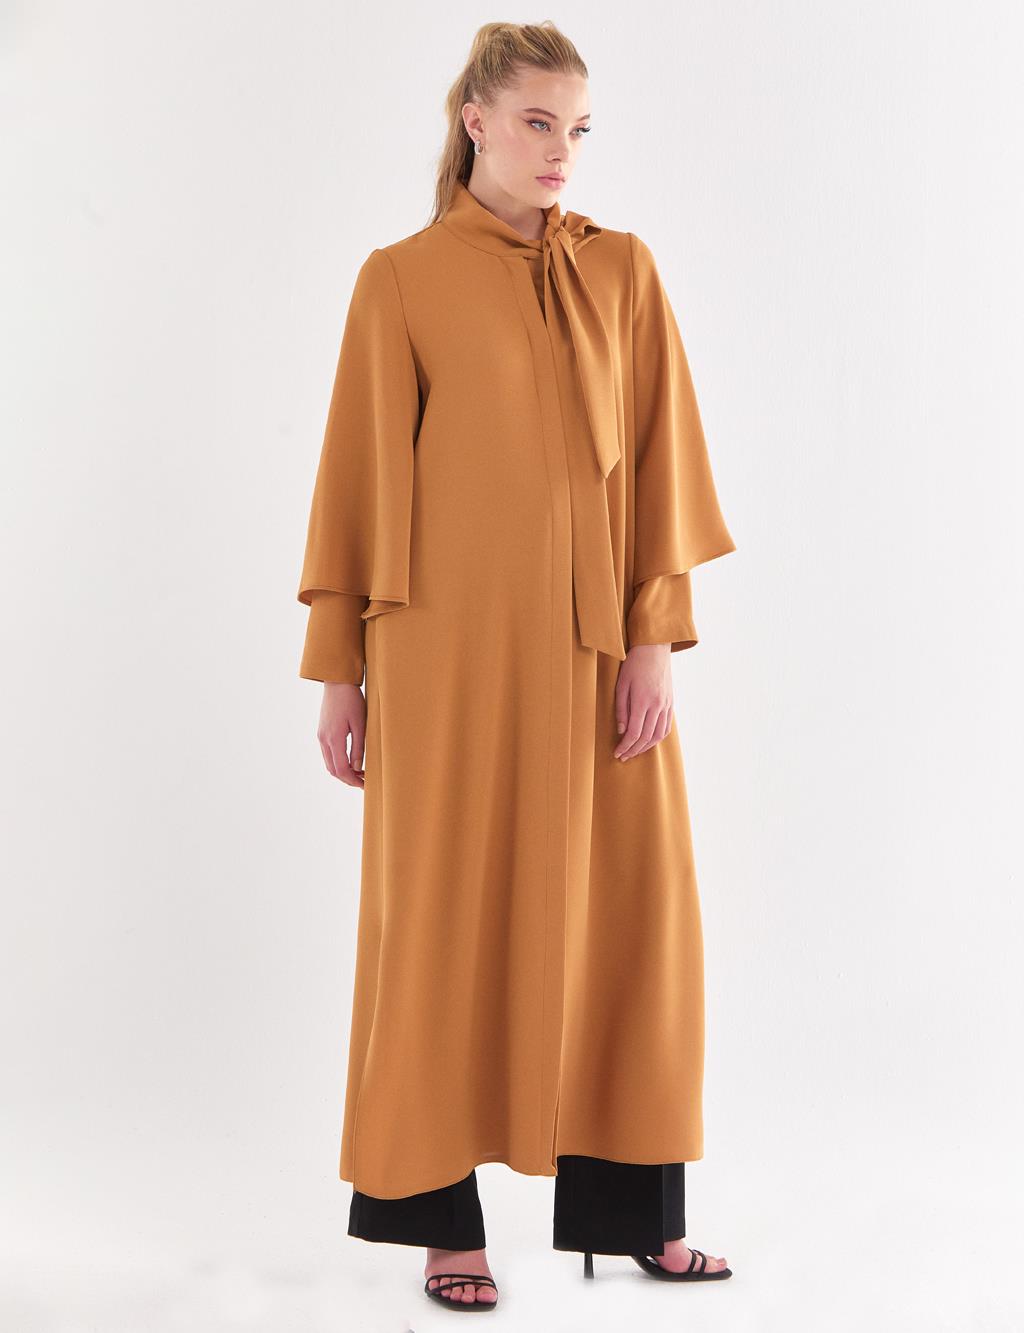 Shawl Collar Bat Sleeve Abaya Camel